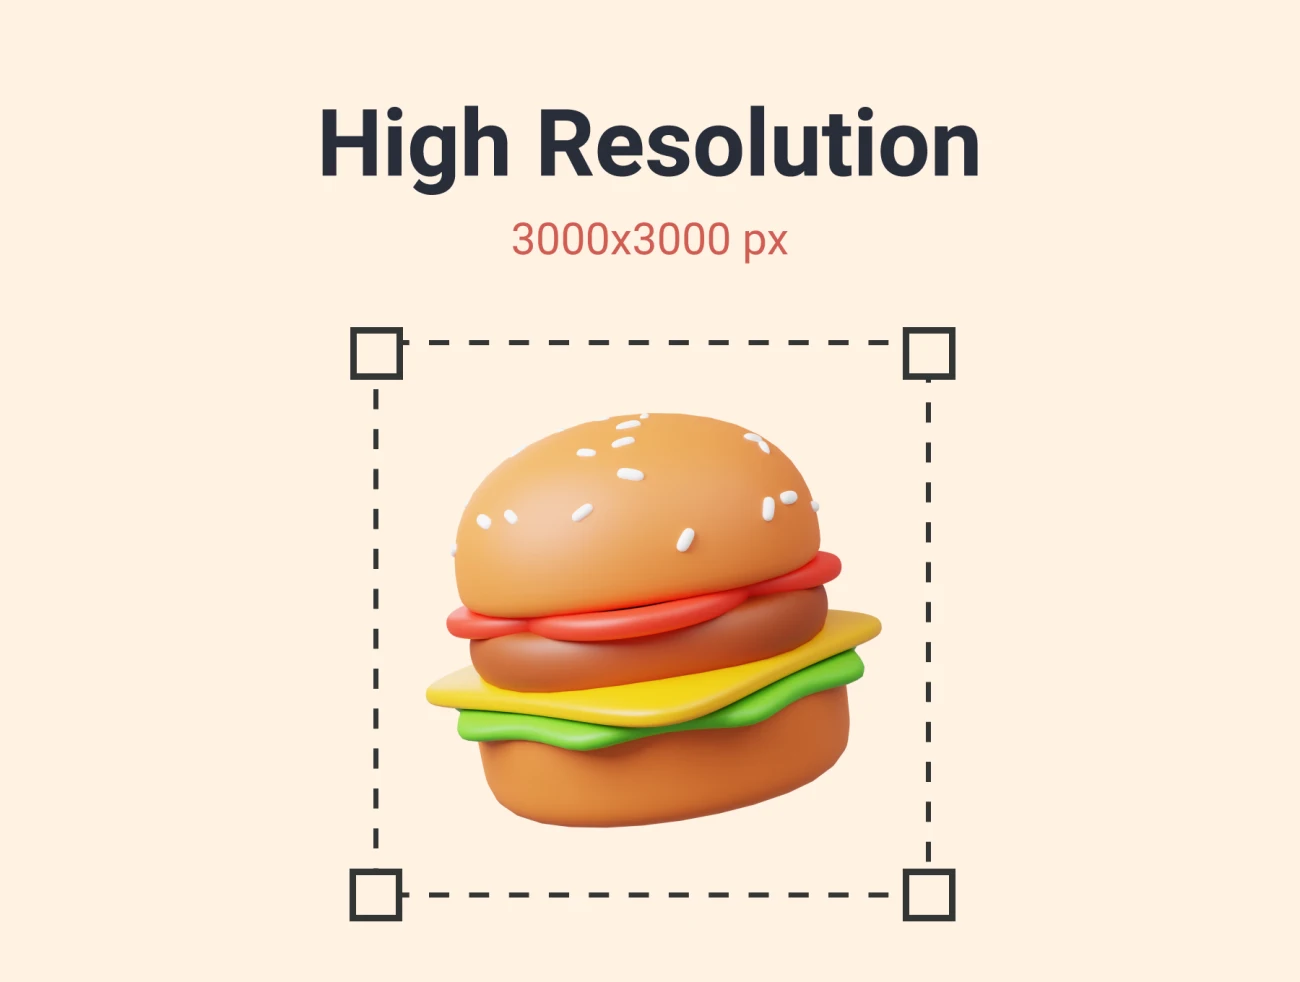 10款食物快餐饮料披萨汉堡3D图标模型 Food and Drink 3D Icon Pack .blender .png-3D/图标-到位啦UI